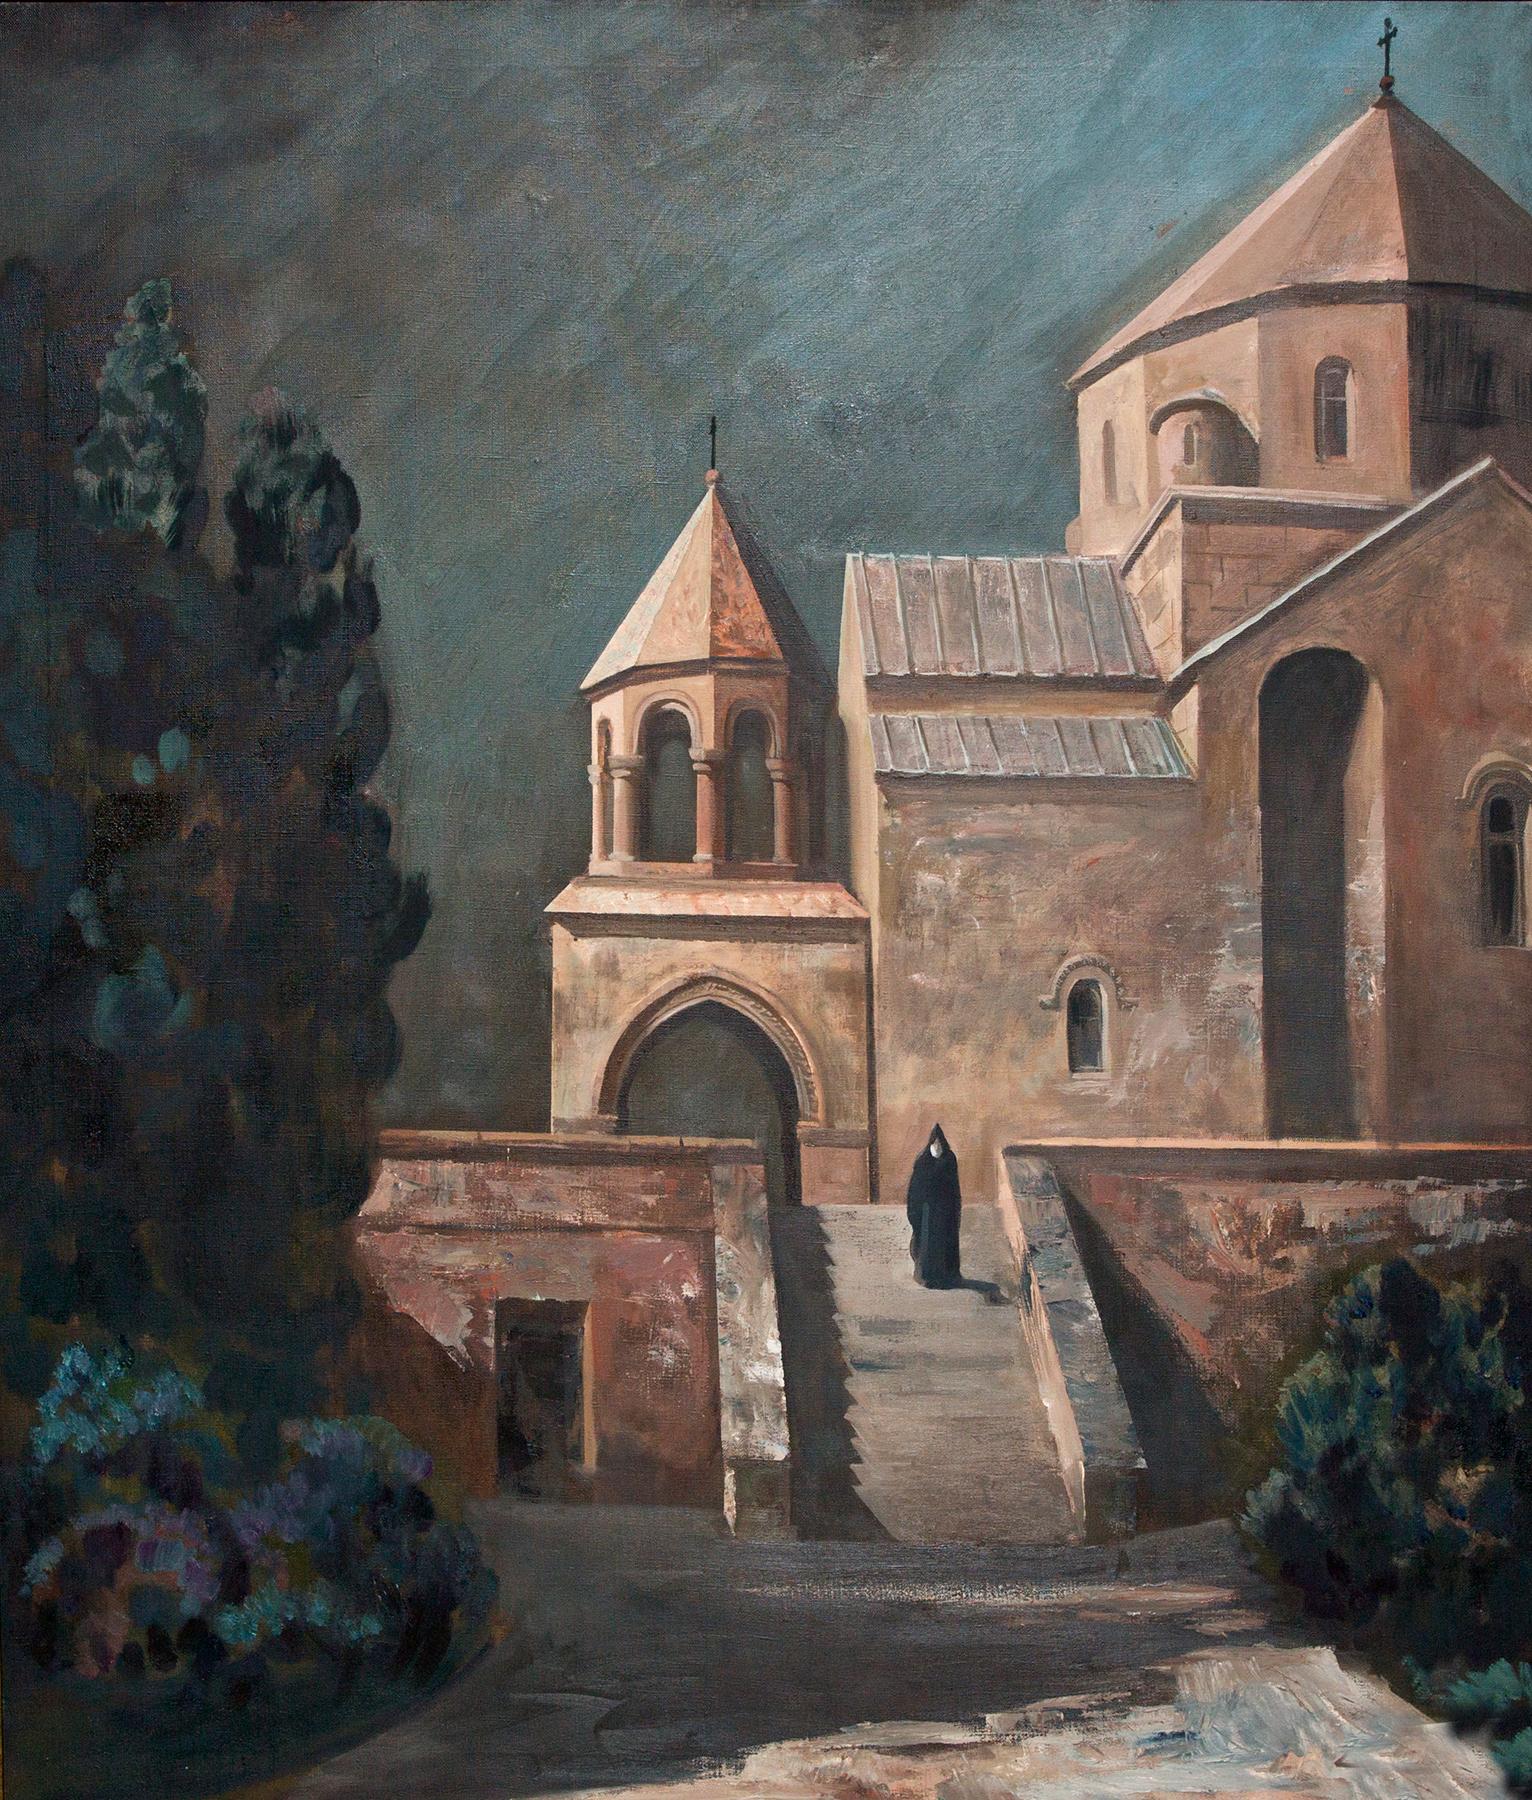 夜. 圣里普西姆教堂. Original modern art painting